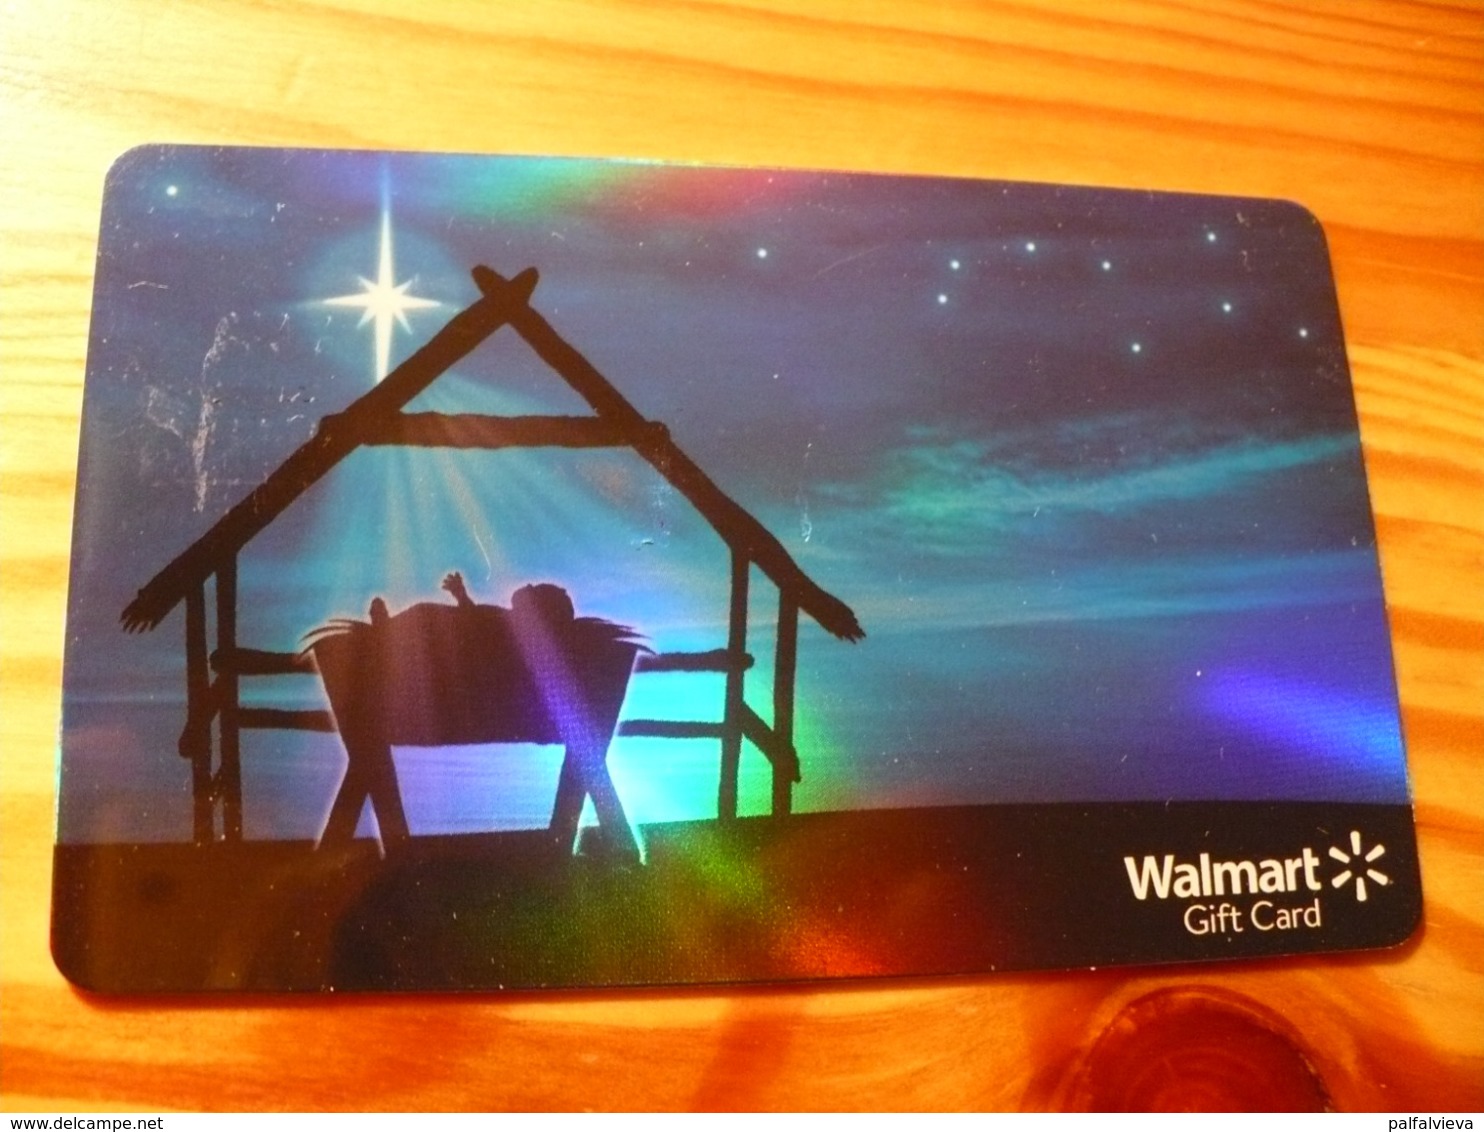 Walmart Gift Card USA - Christmas - Gift Cards